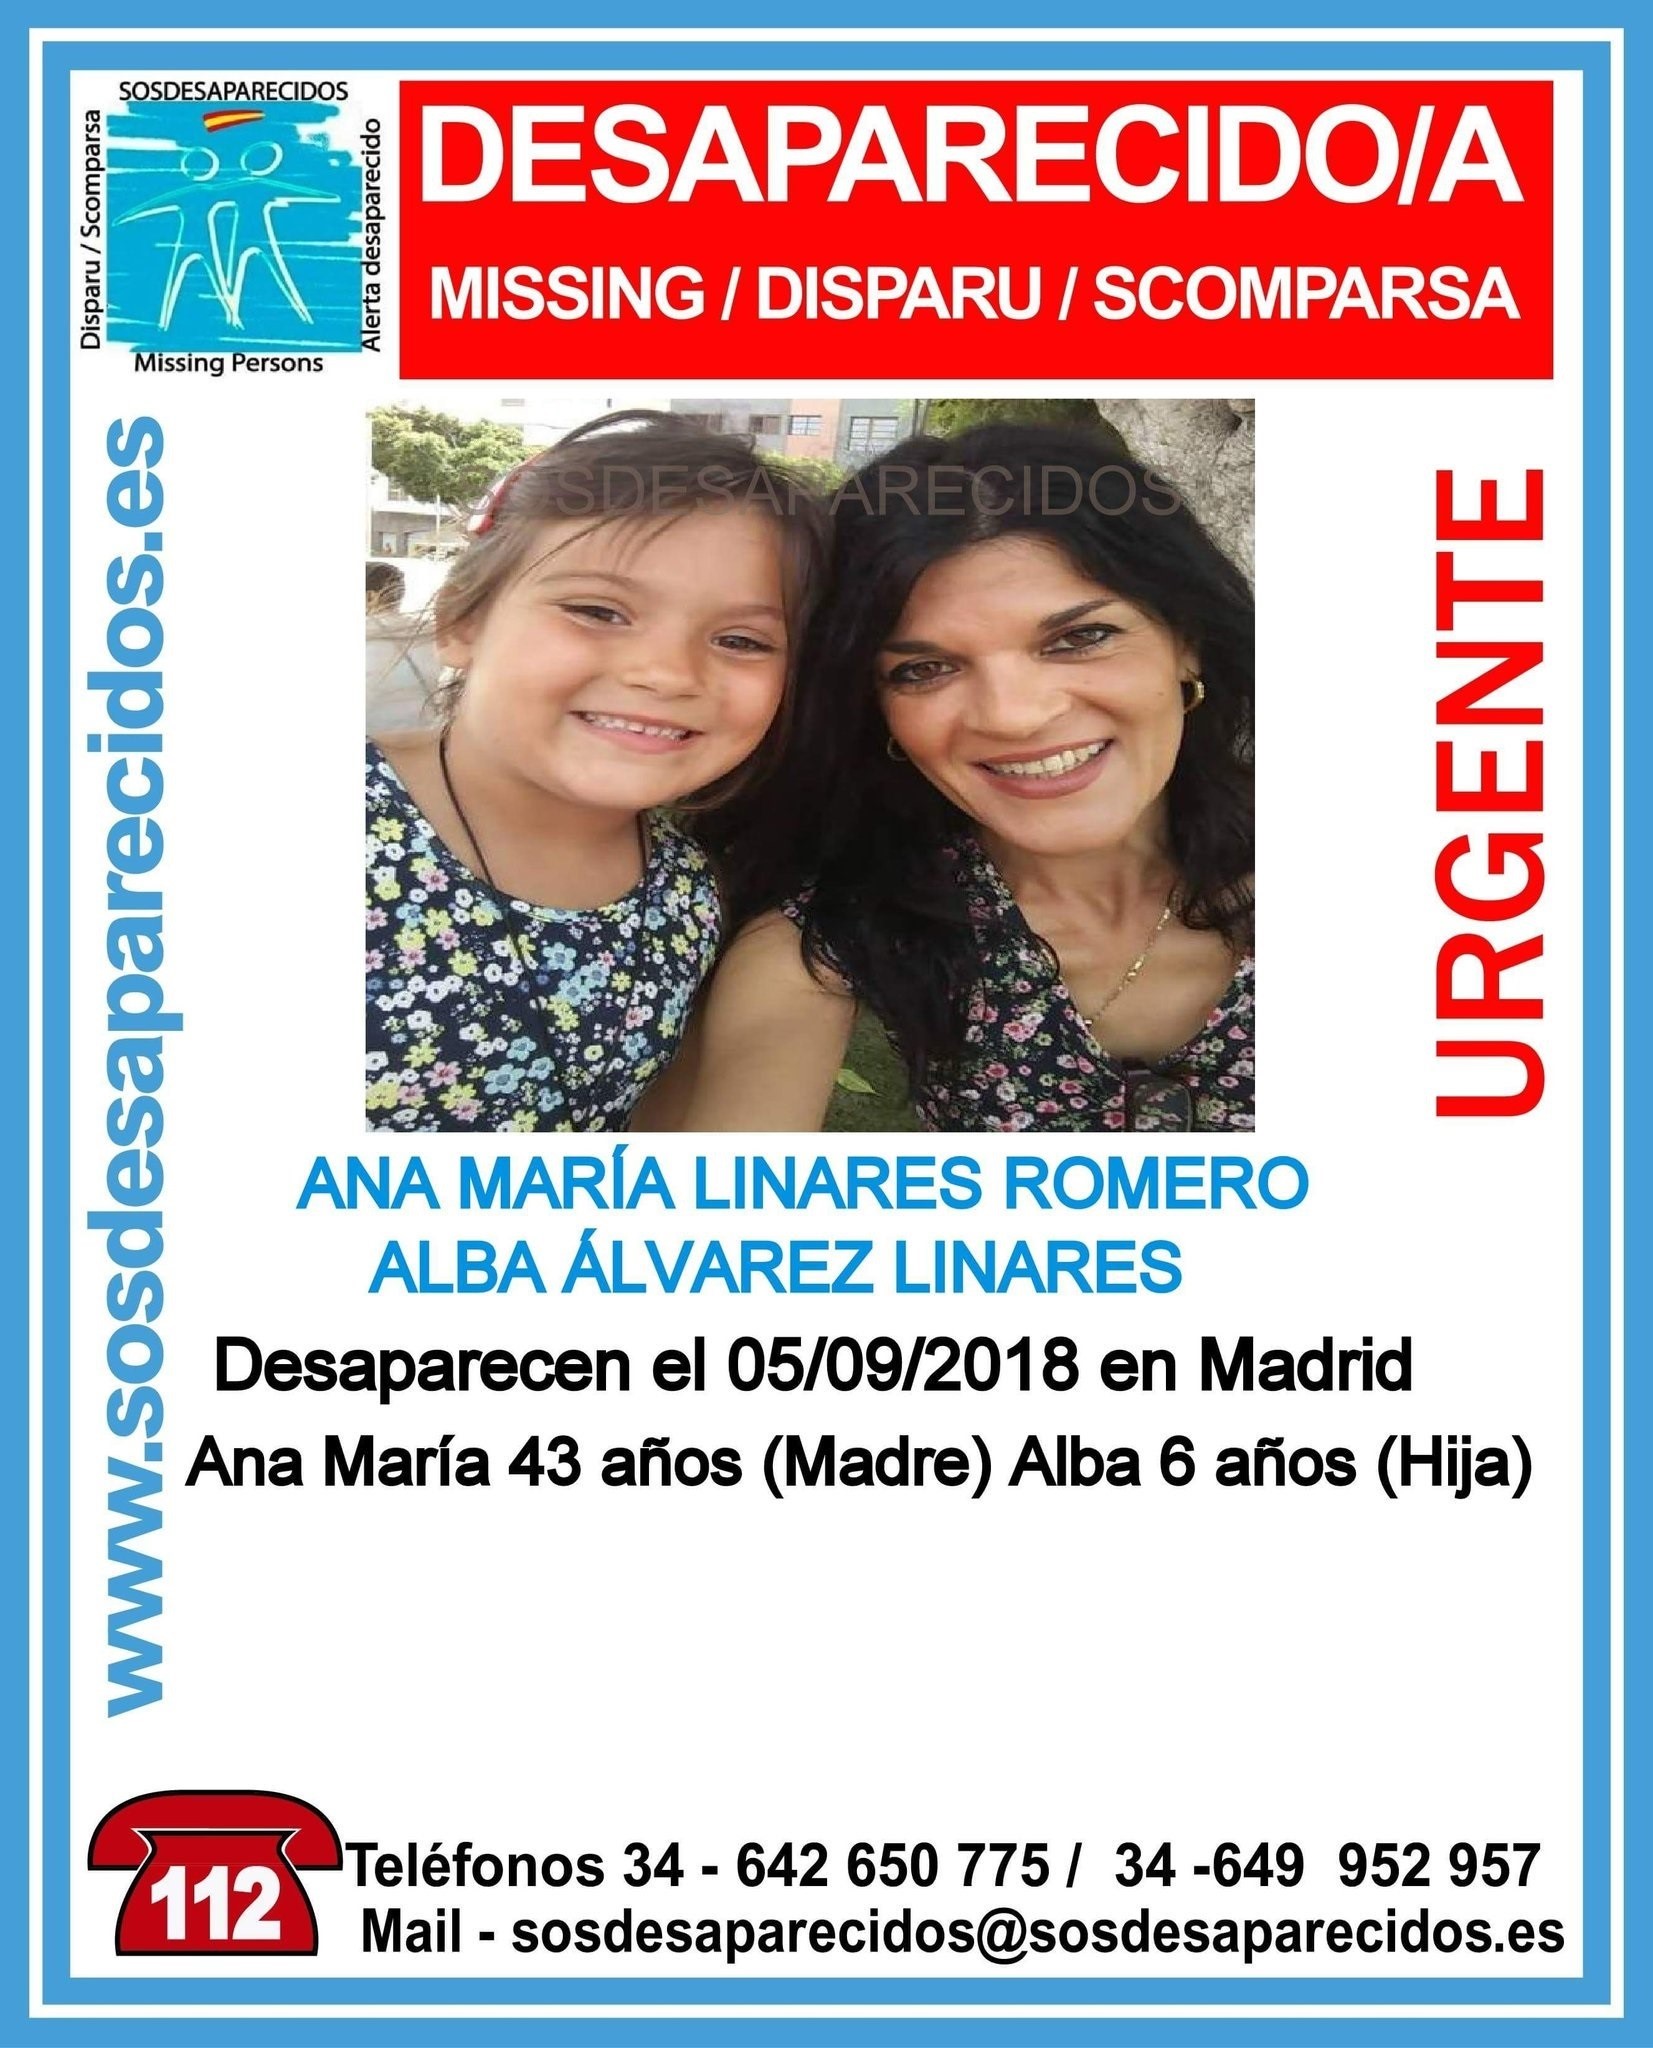 Mutter und Tochter von Fuerteventura in Madrid vermisst